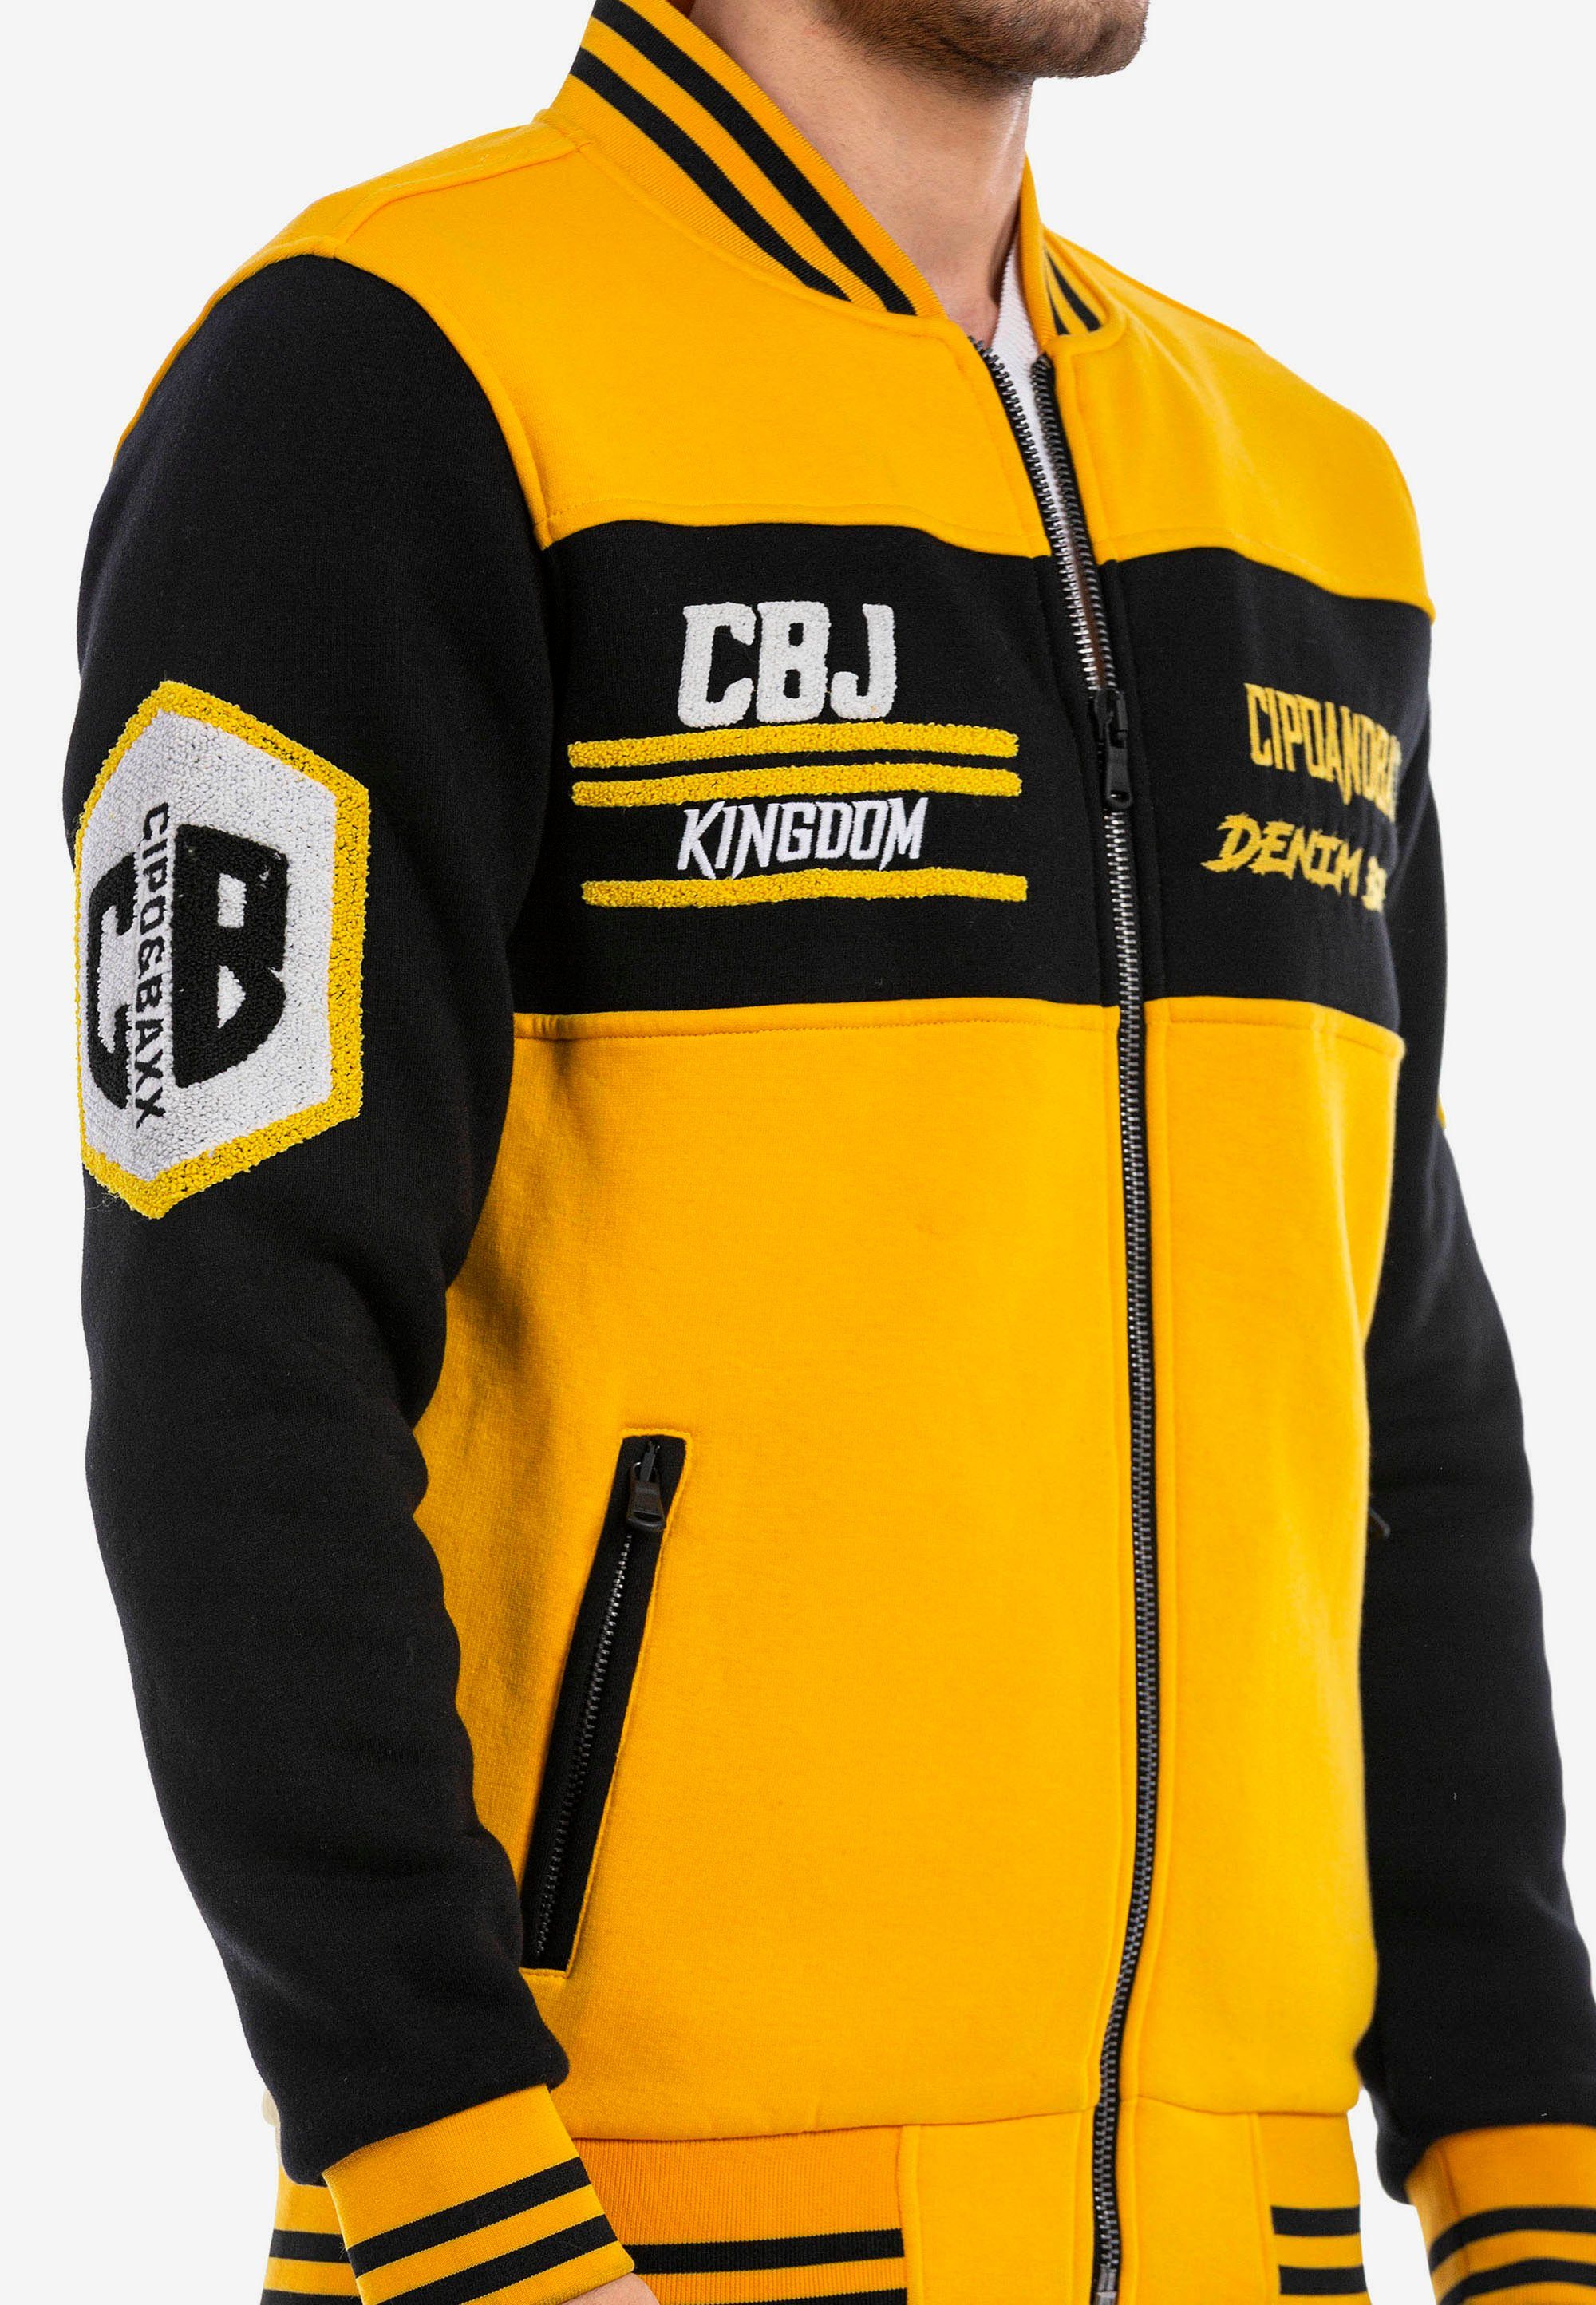 Cipo & Baxx Sweatjacke in sportlichem gelb-schwarz Design